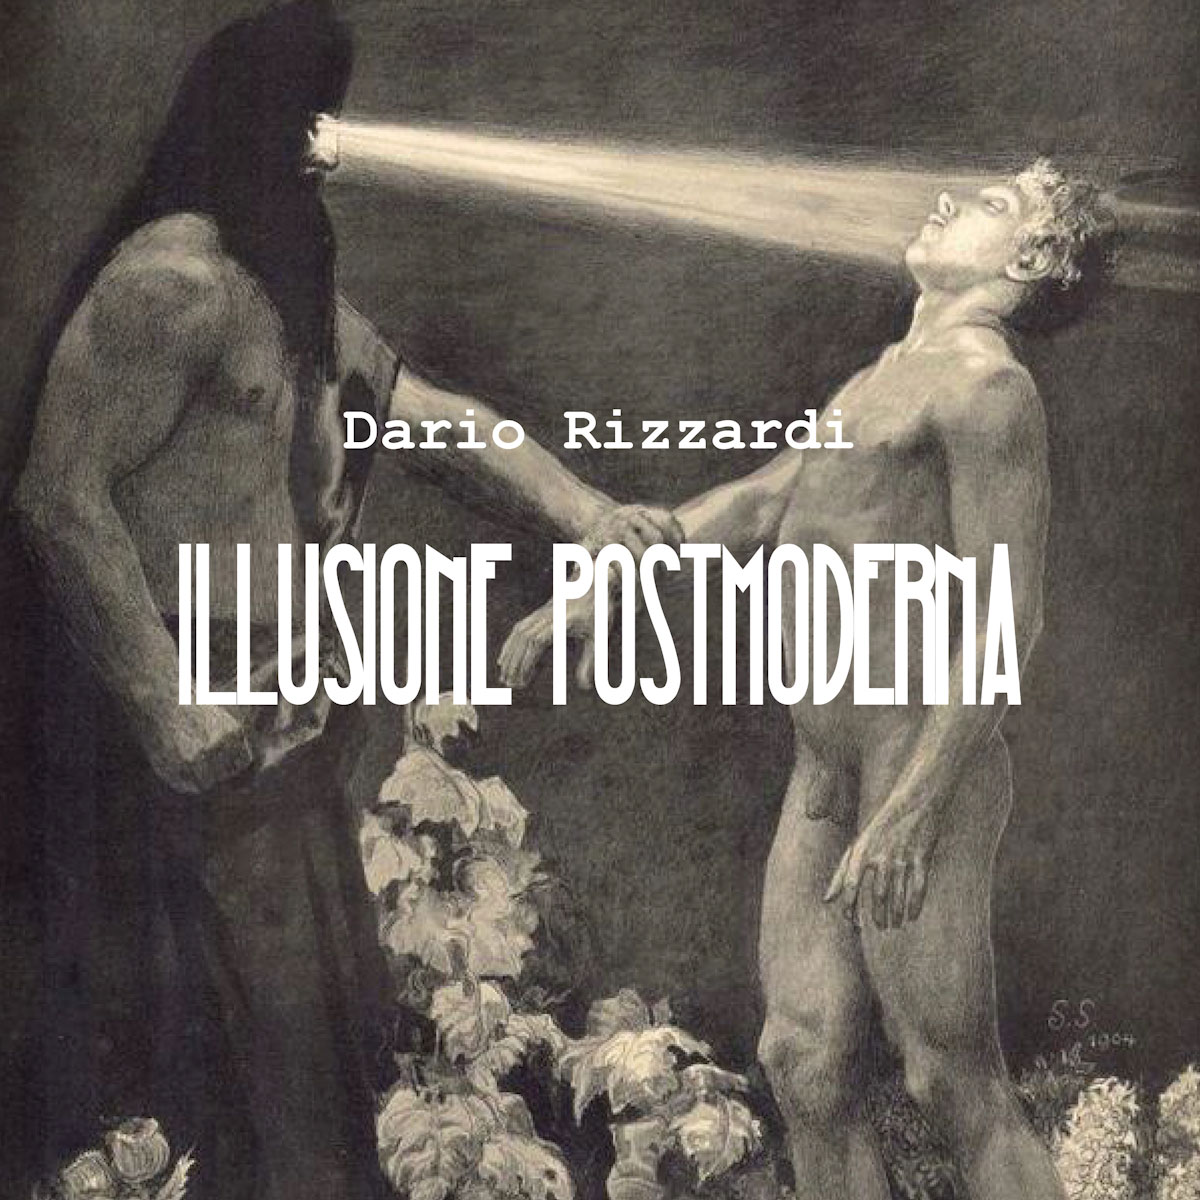 Scopri di più sull'articolo Dario Rizzardi: “Illusione Postmoderna” il nuovo singolo